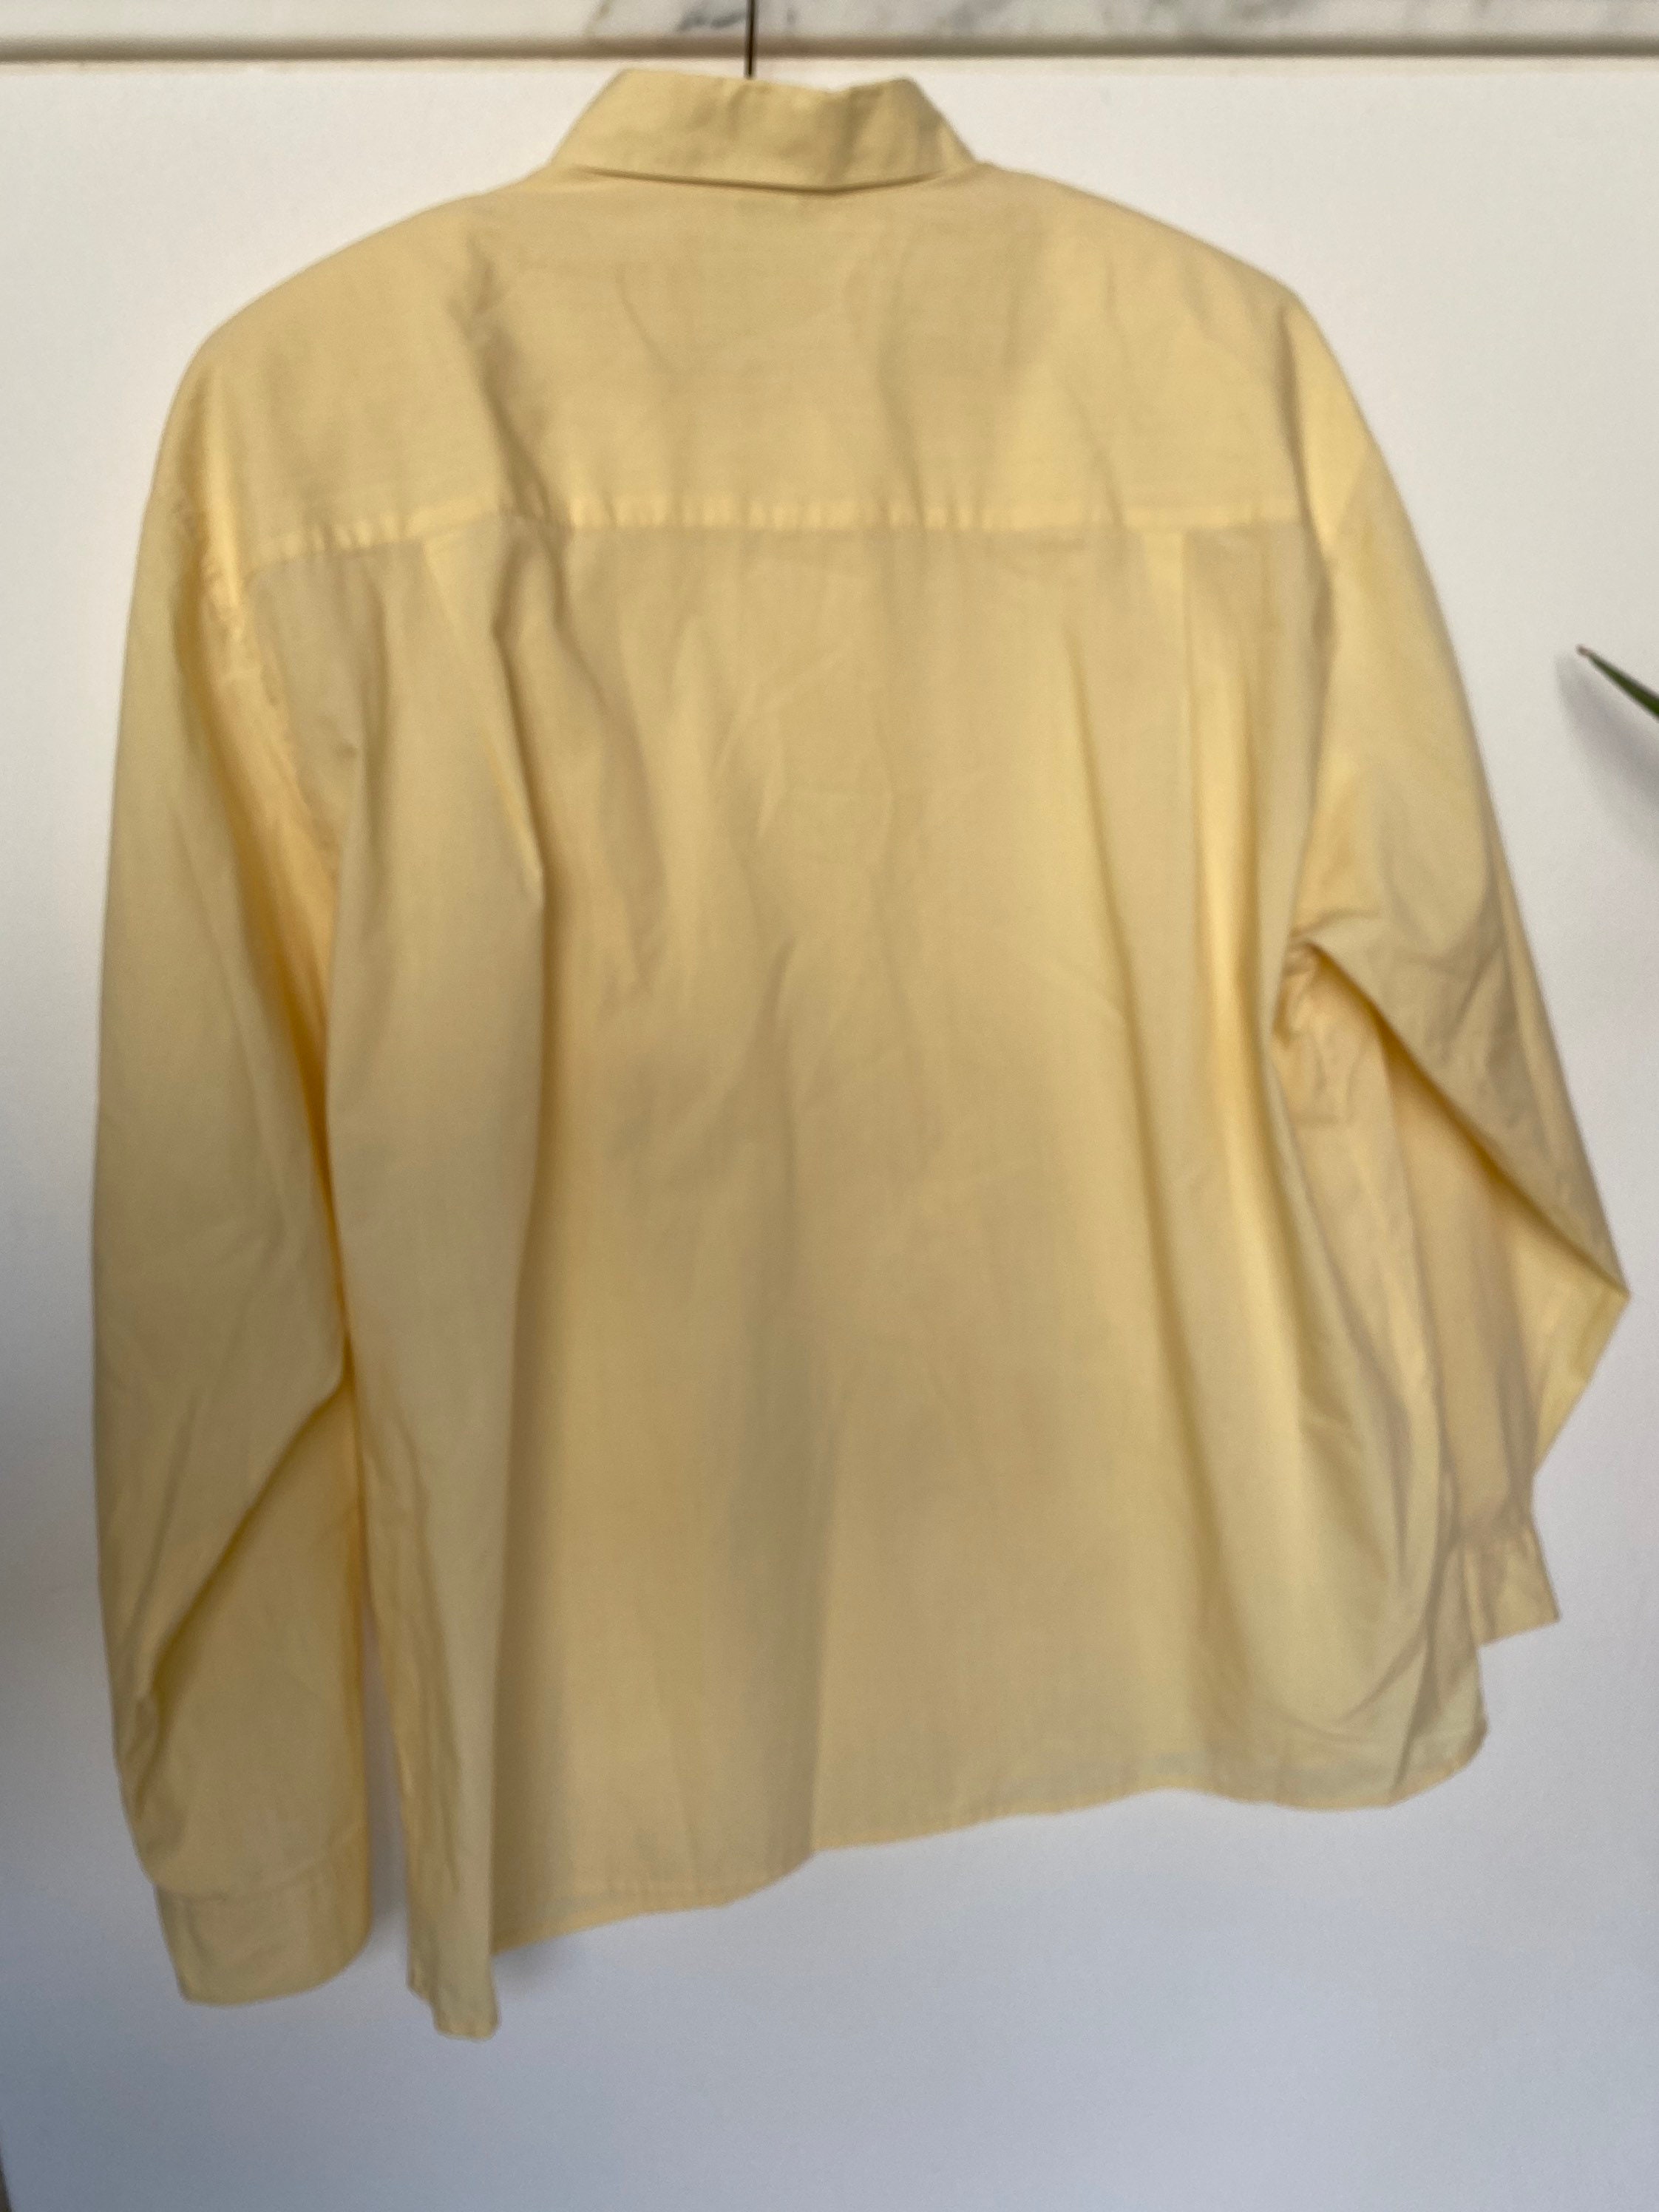 Vintage Lemon Cream Cotton Blend Long Sleeve Shirt/ 3XL 4XL - Etsy